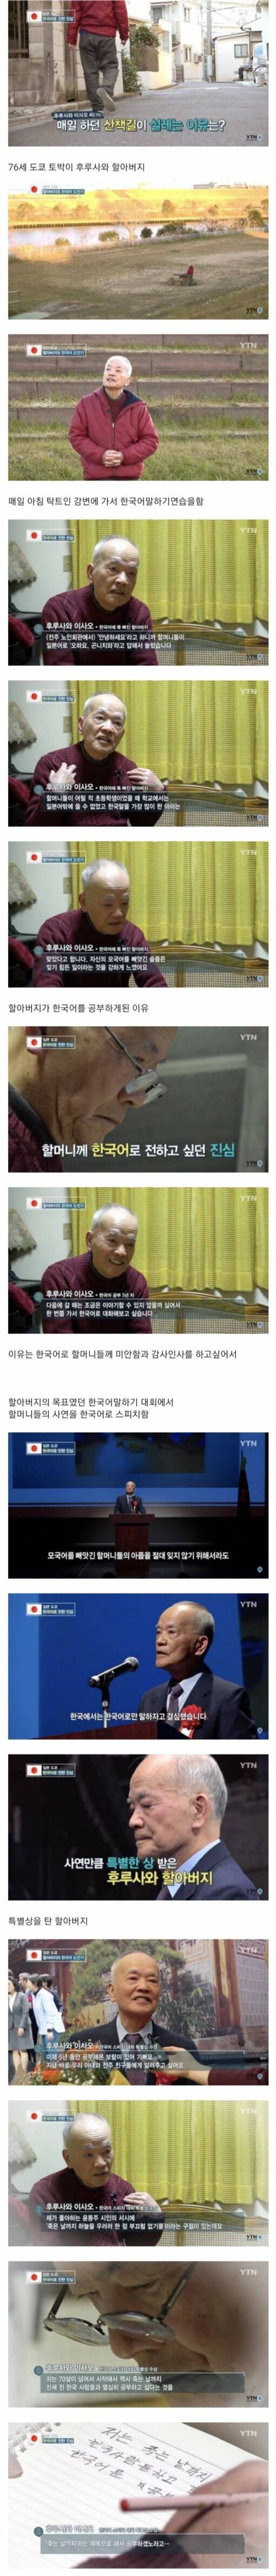 12 일본 할아버지가 5년째 한국어를 배우는 EU.jpg